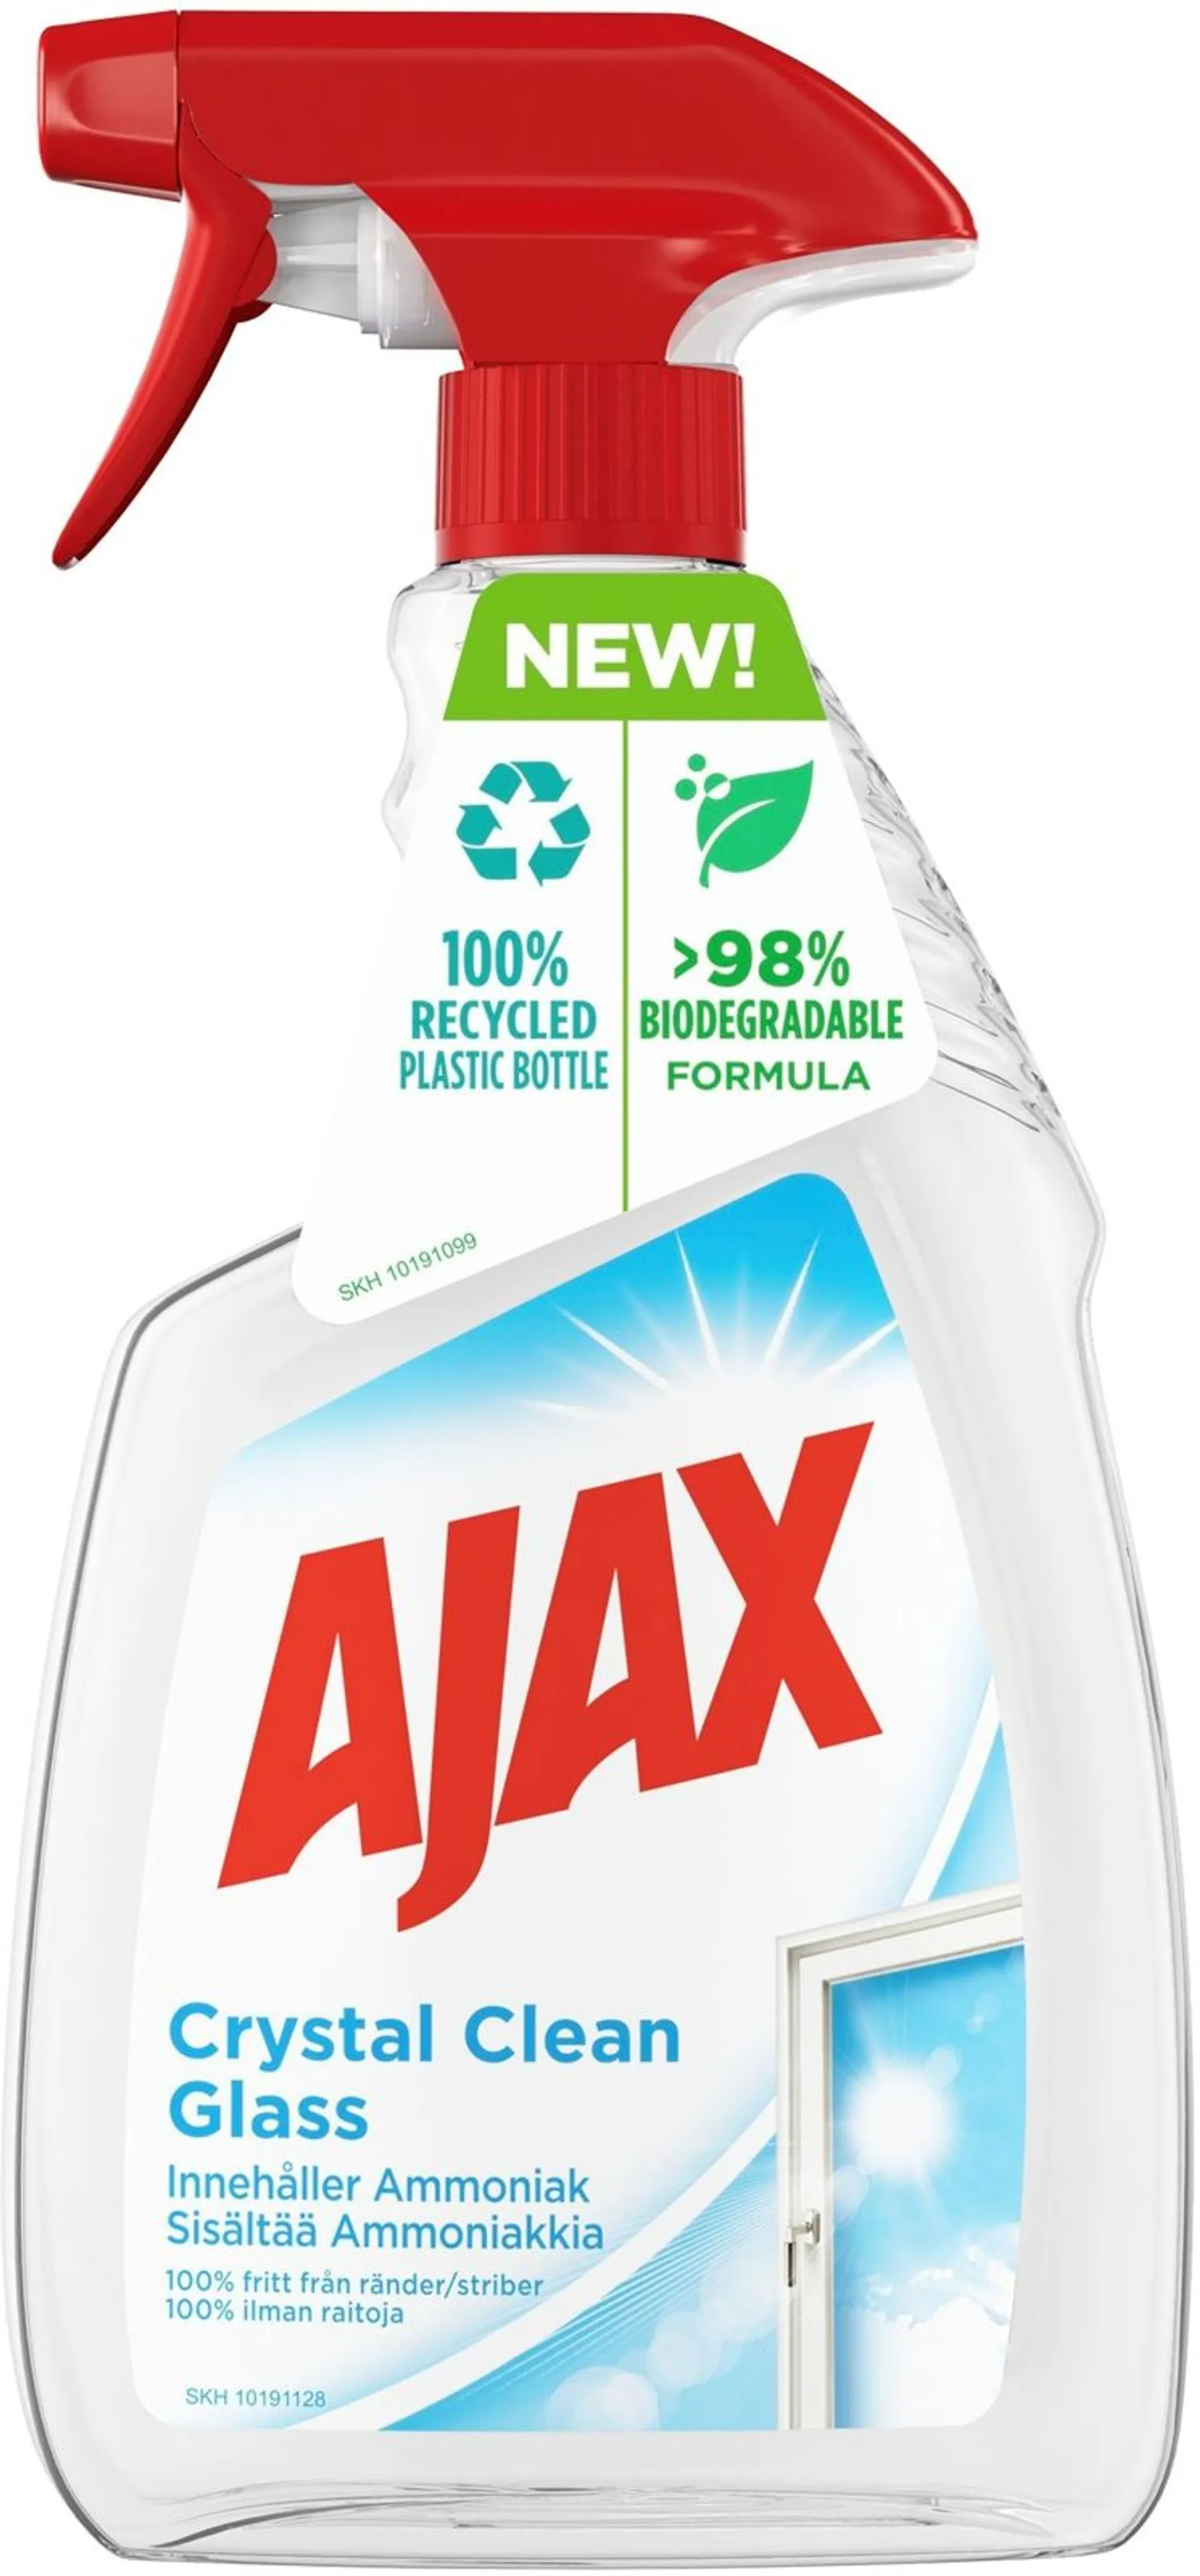 Ajax Crystal Clean lasinpuhdistusspray 750ml